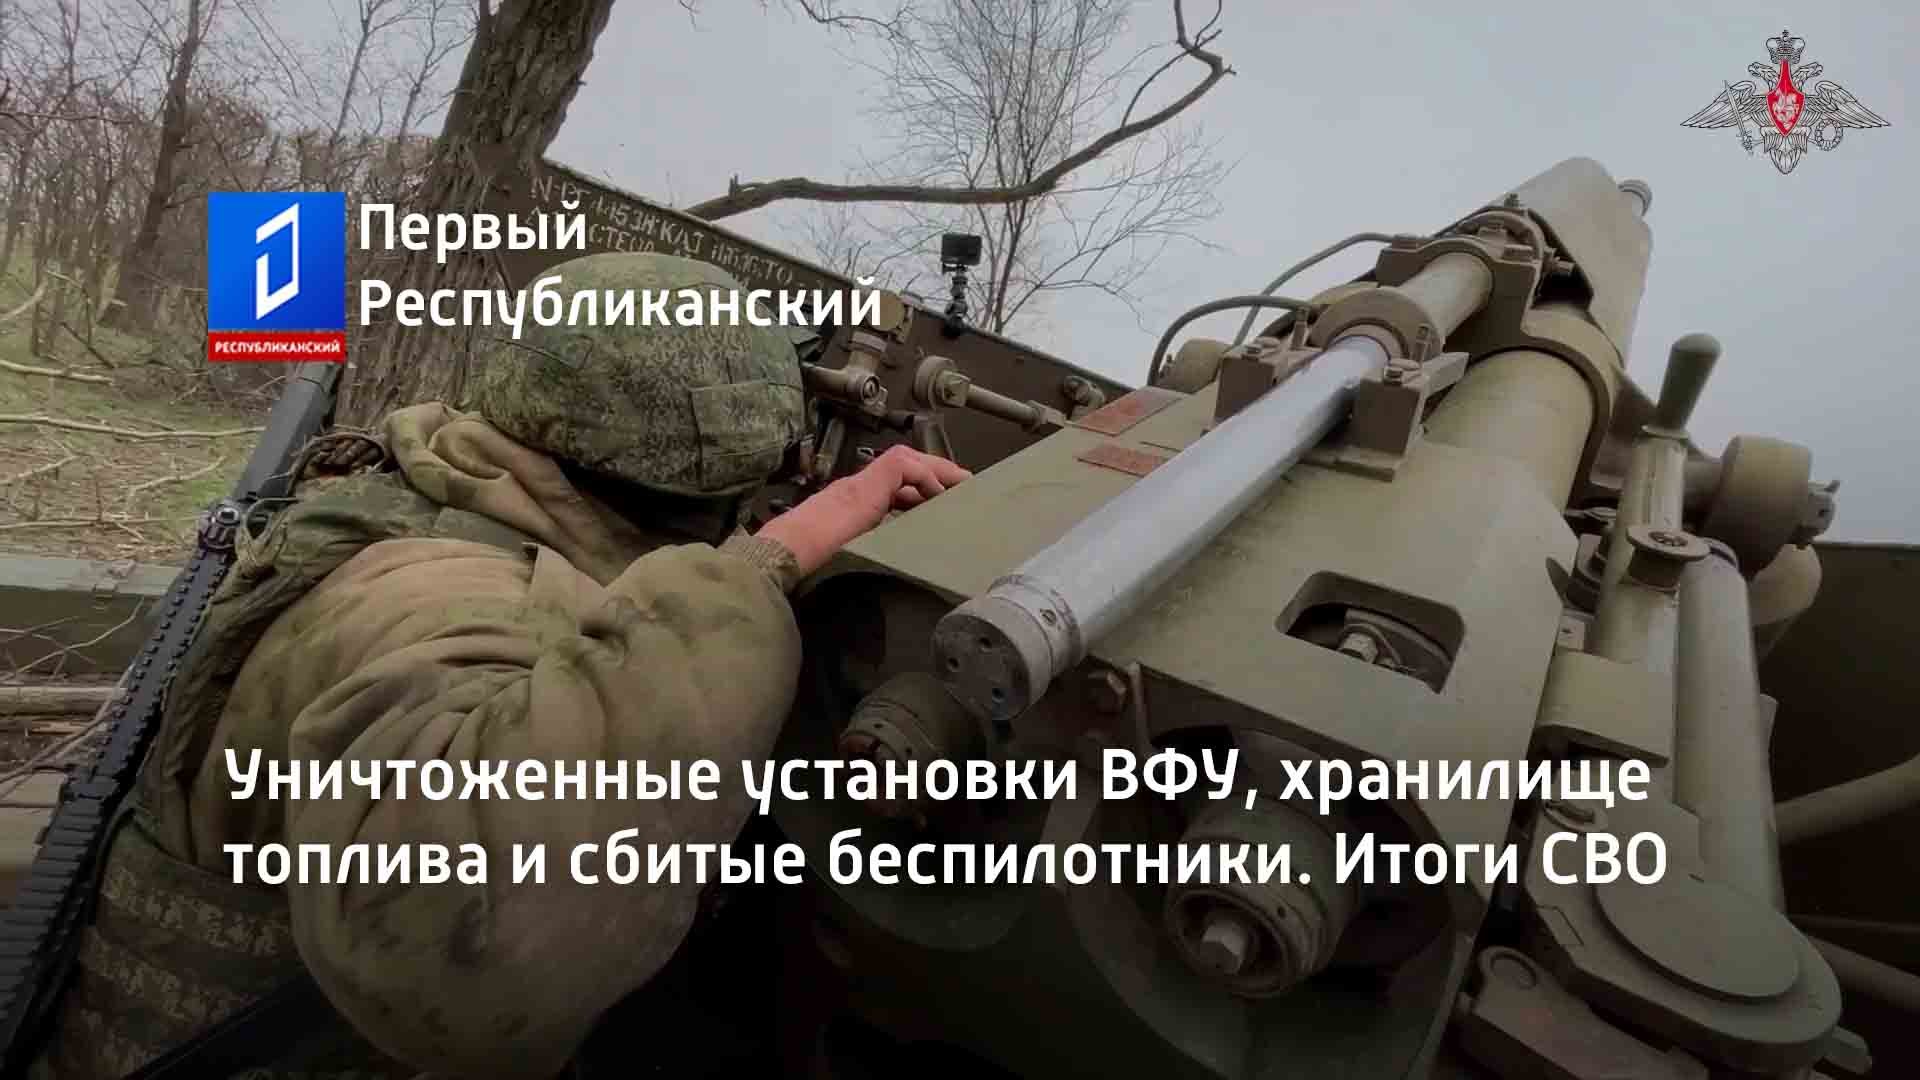 Разрушающие установки. Машина для уничтожения и установки мин. Российские солдаты дроны. Установки на авто на Украине Российской армии.